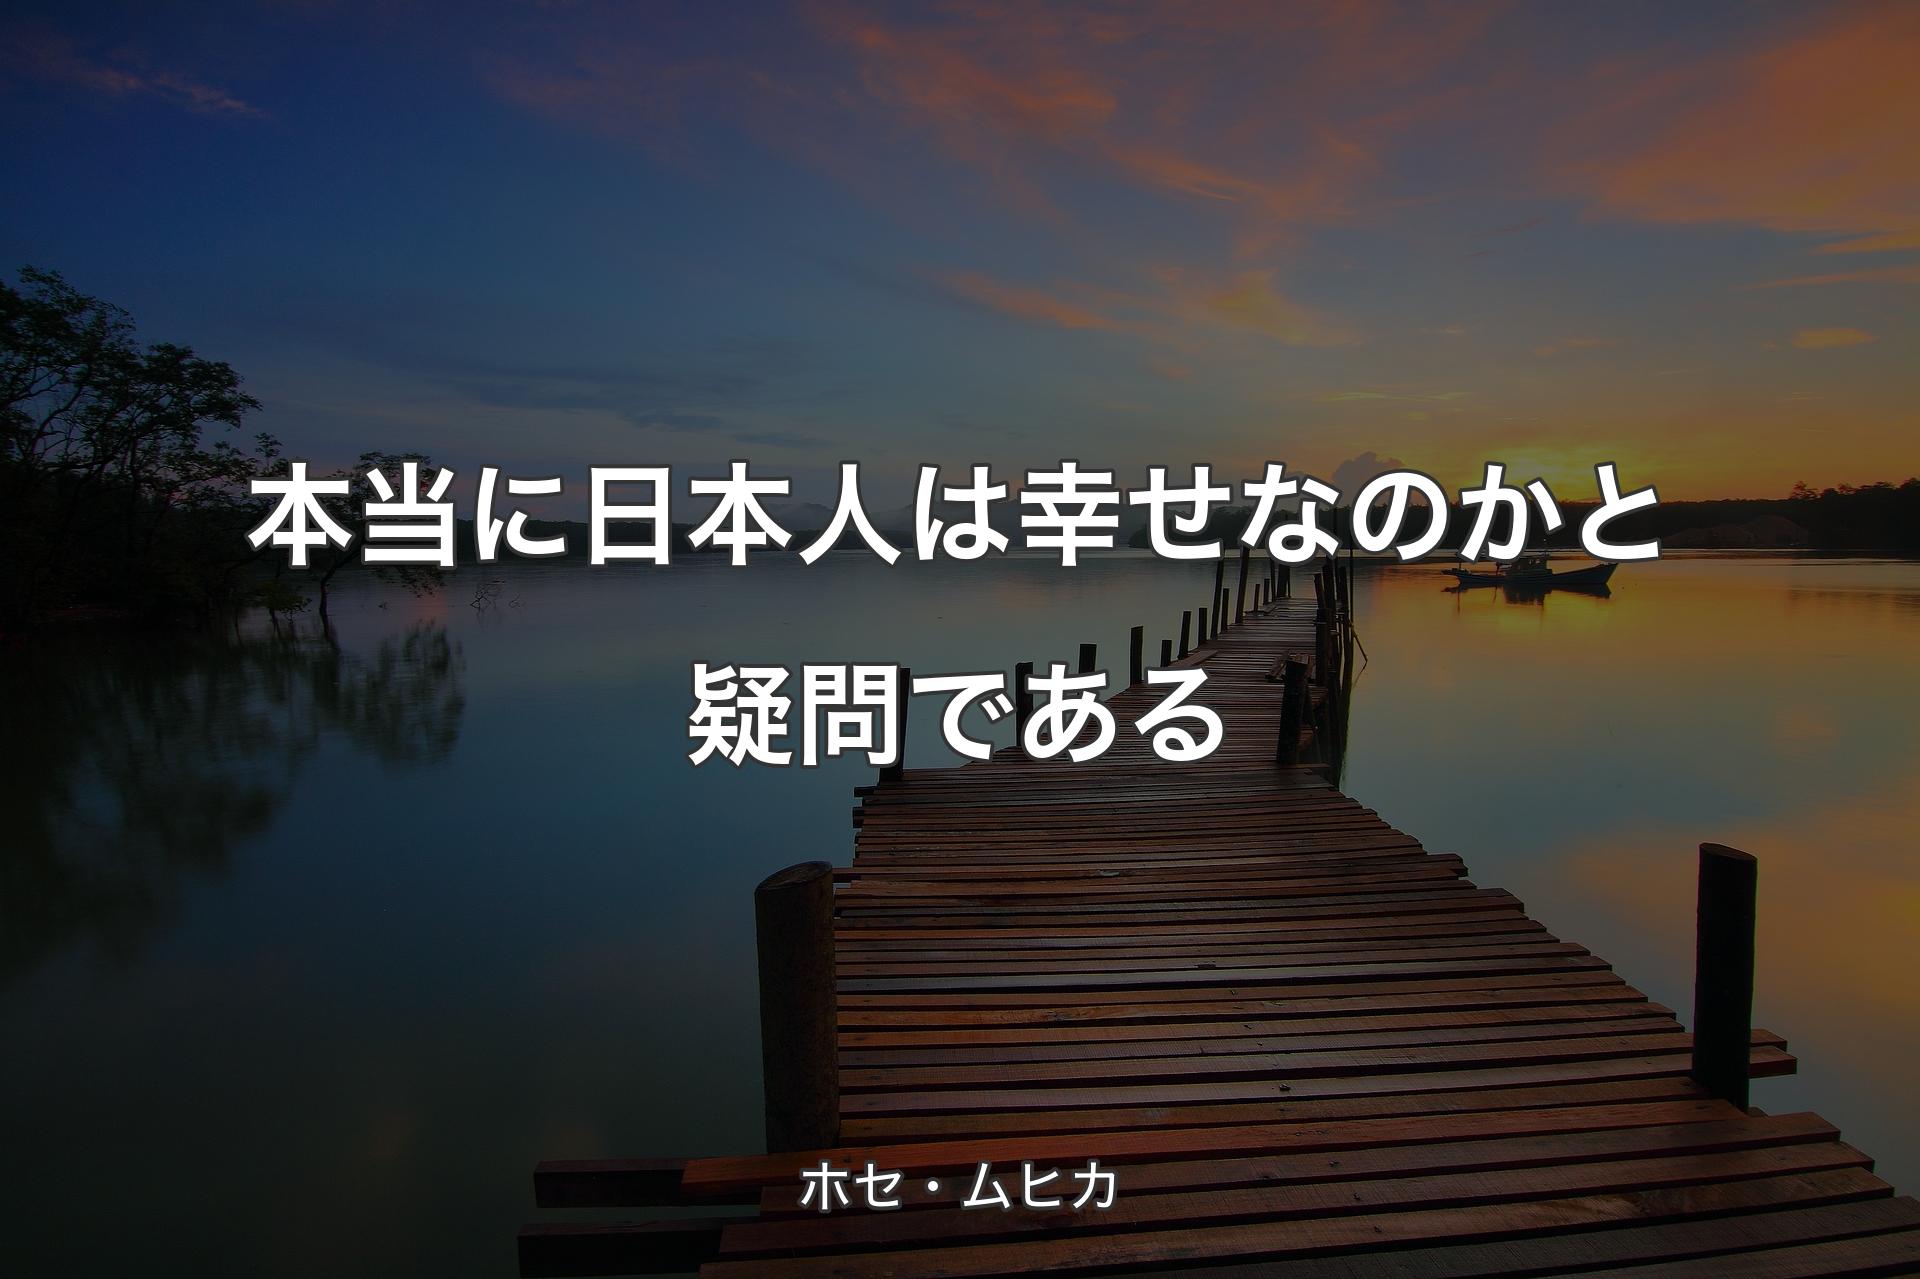 【背景3】本当に日本人は幸せなのかと疑問である - ホセ・ムヒカ